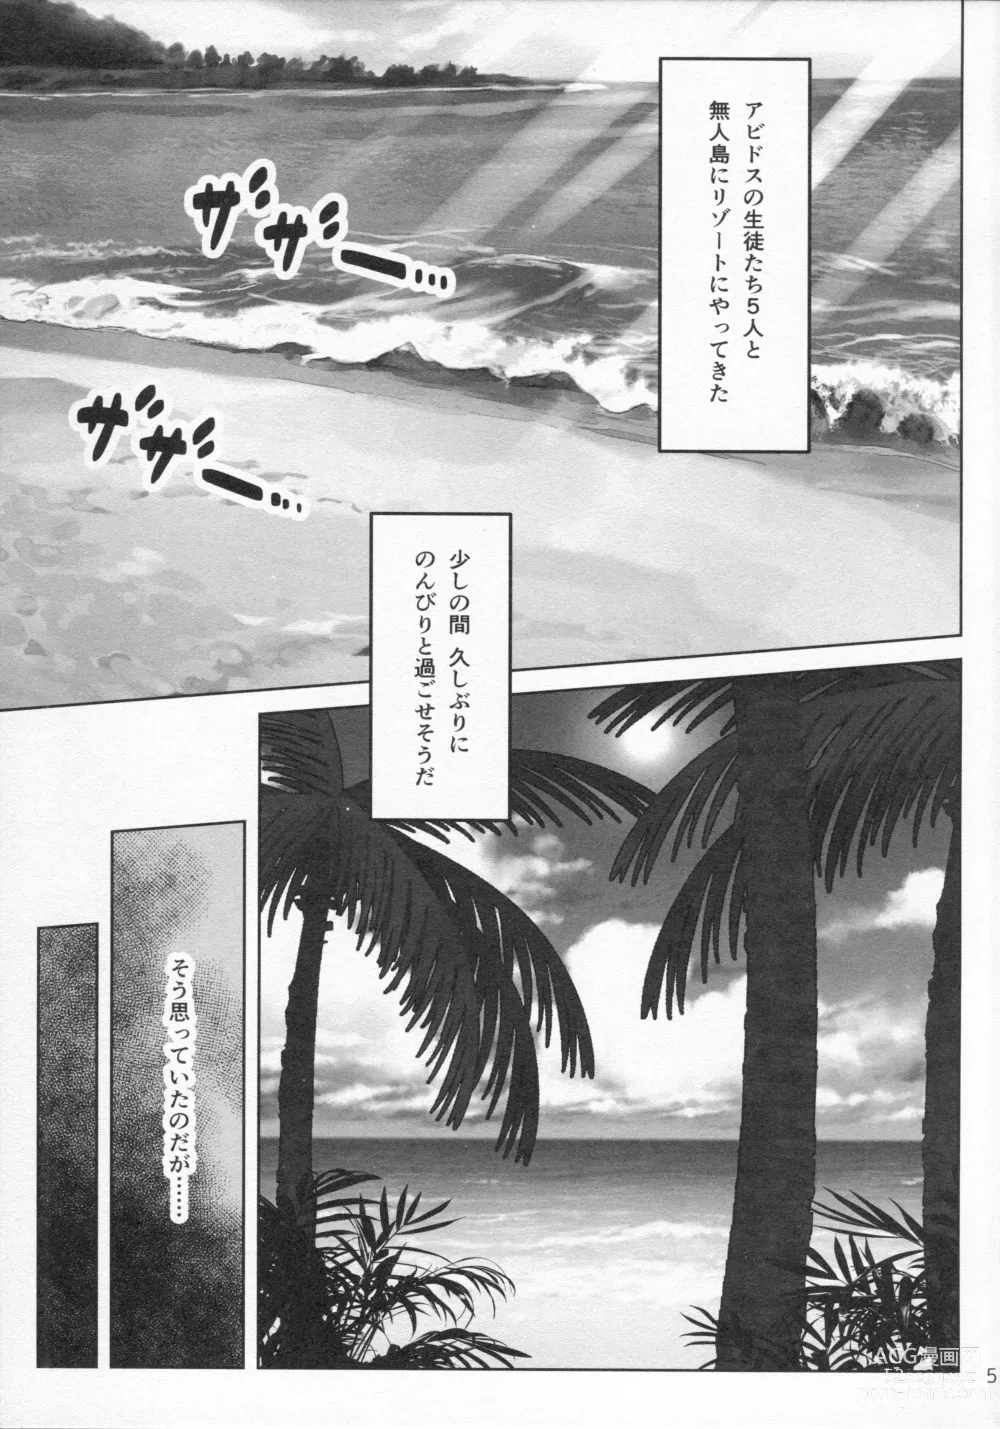 Page 6 of doujinshi Nonomi Massakari